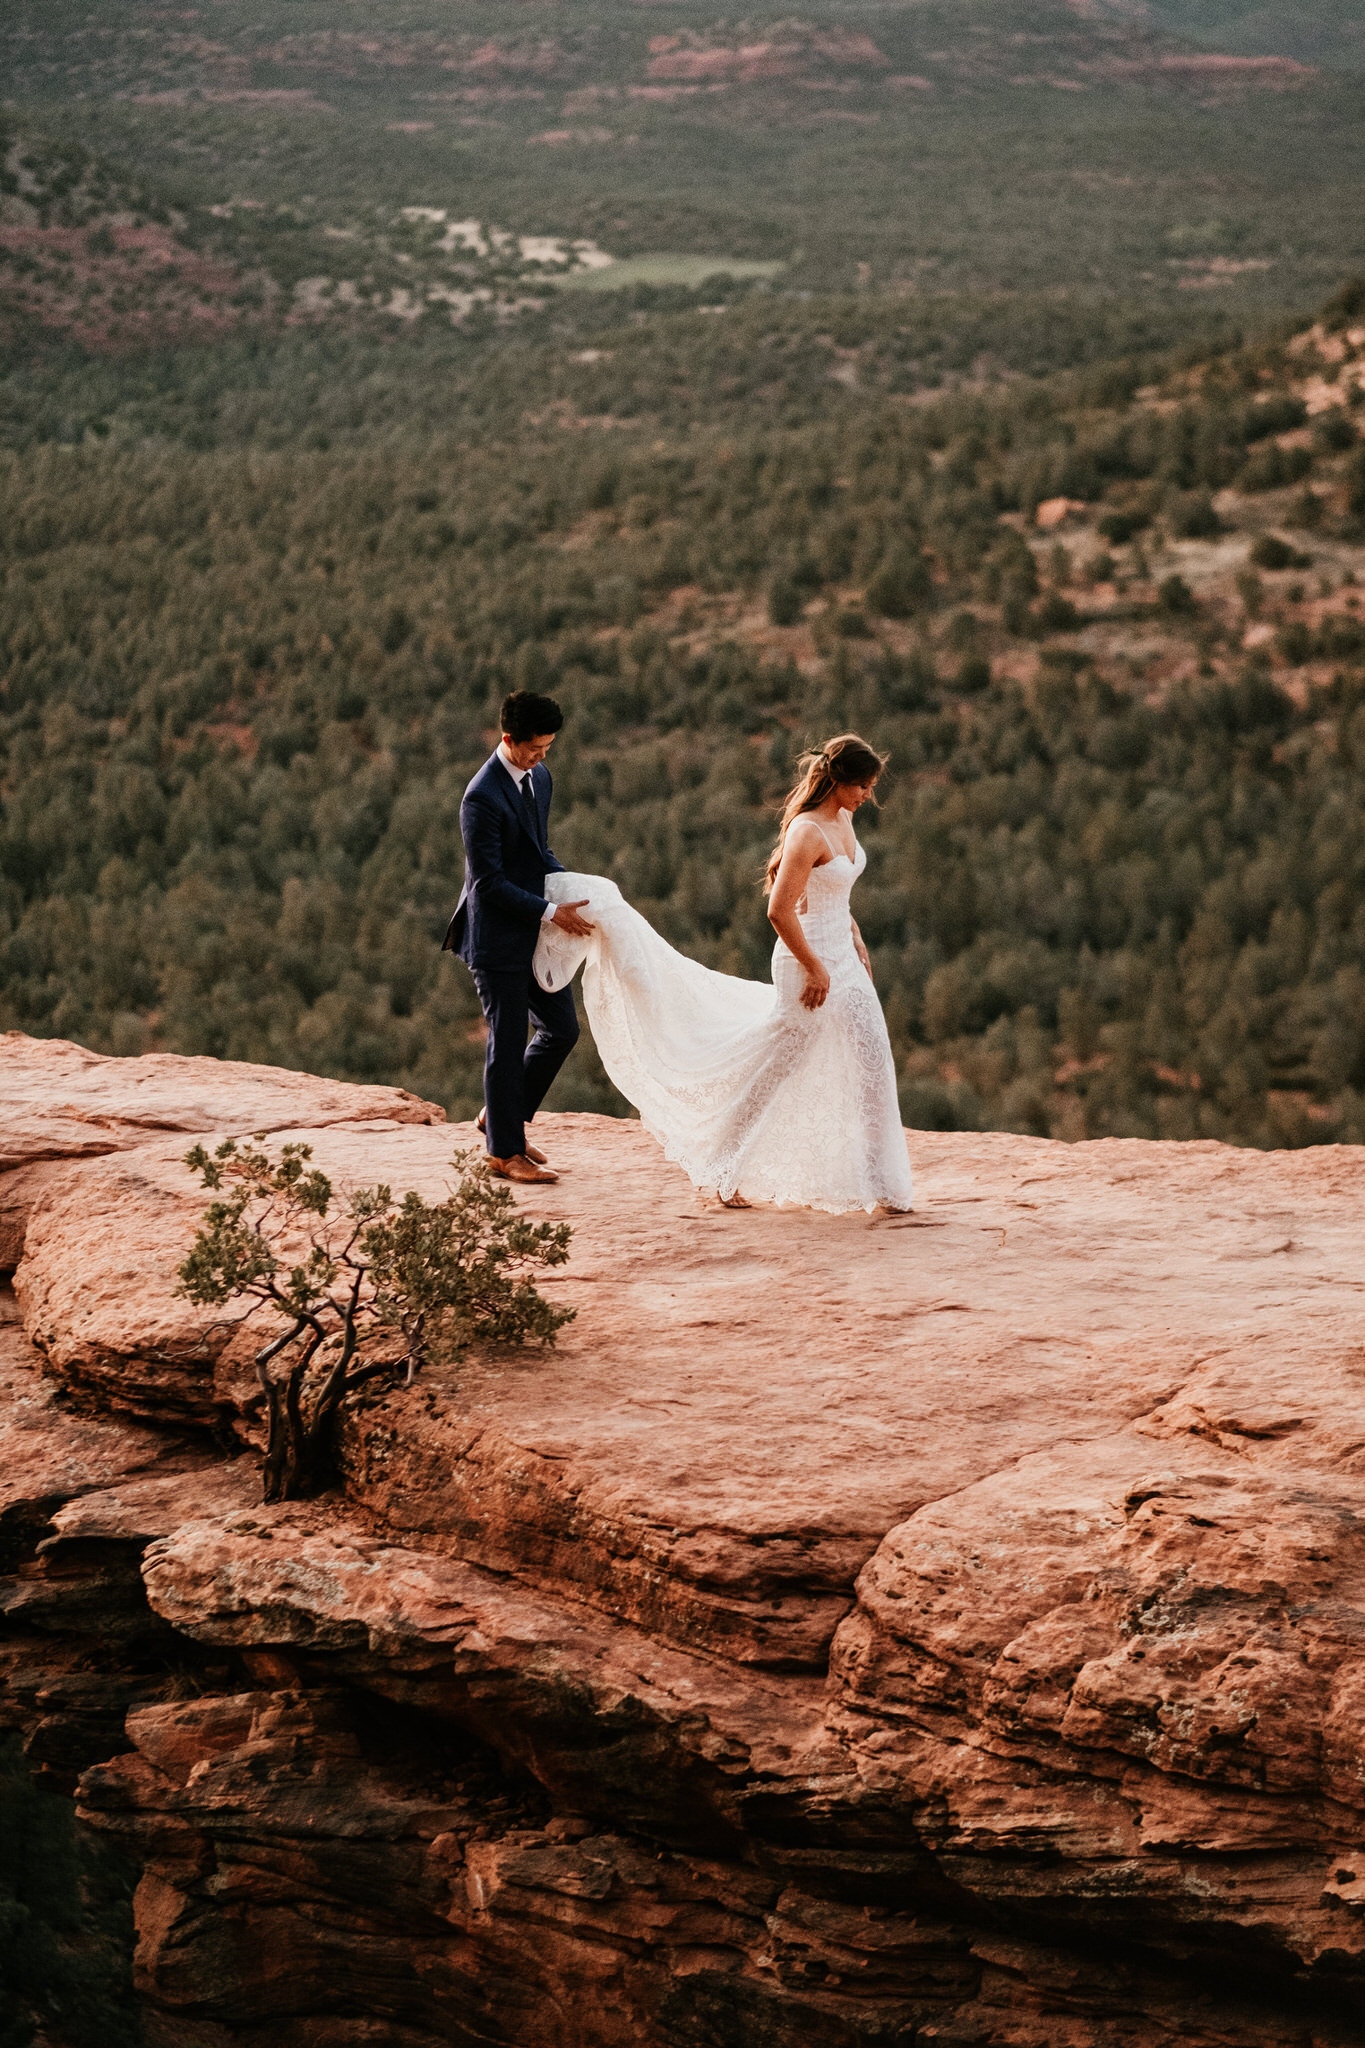 Wedding in Arizona, Sedona - The Wedding